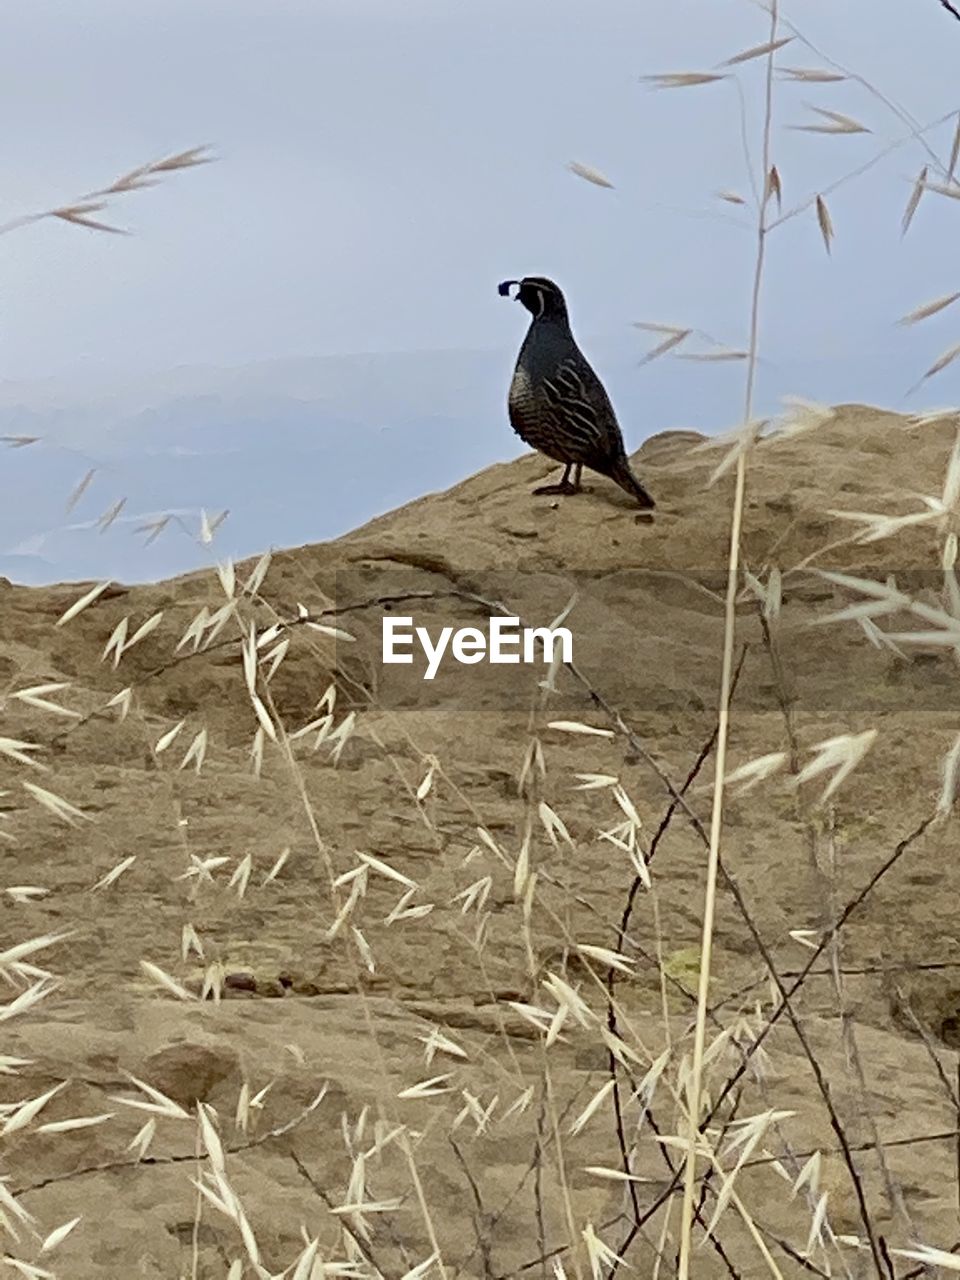 BIRD ON A LAND